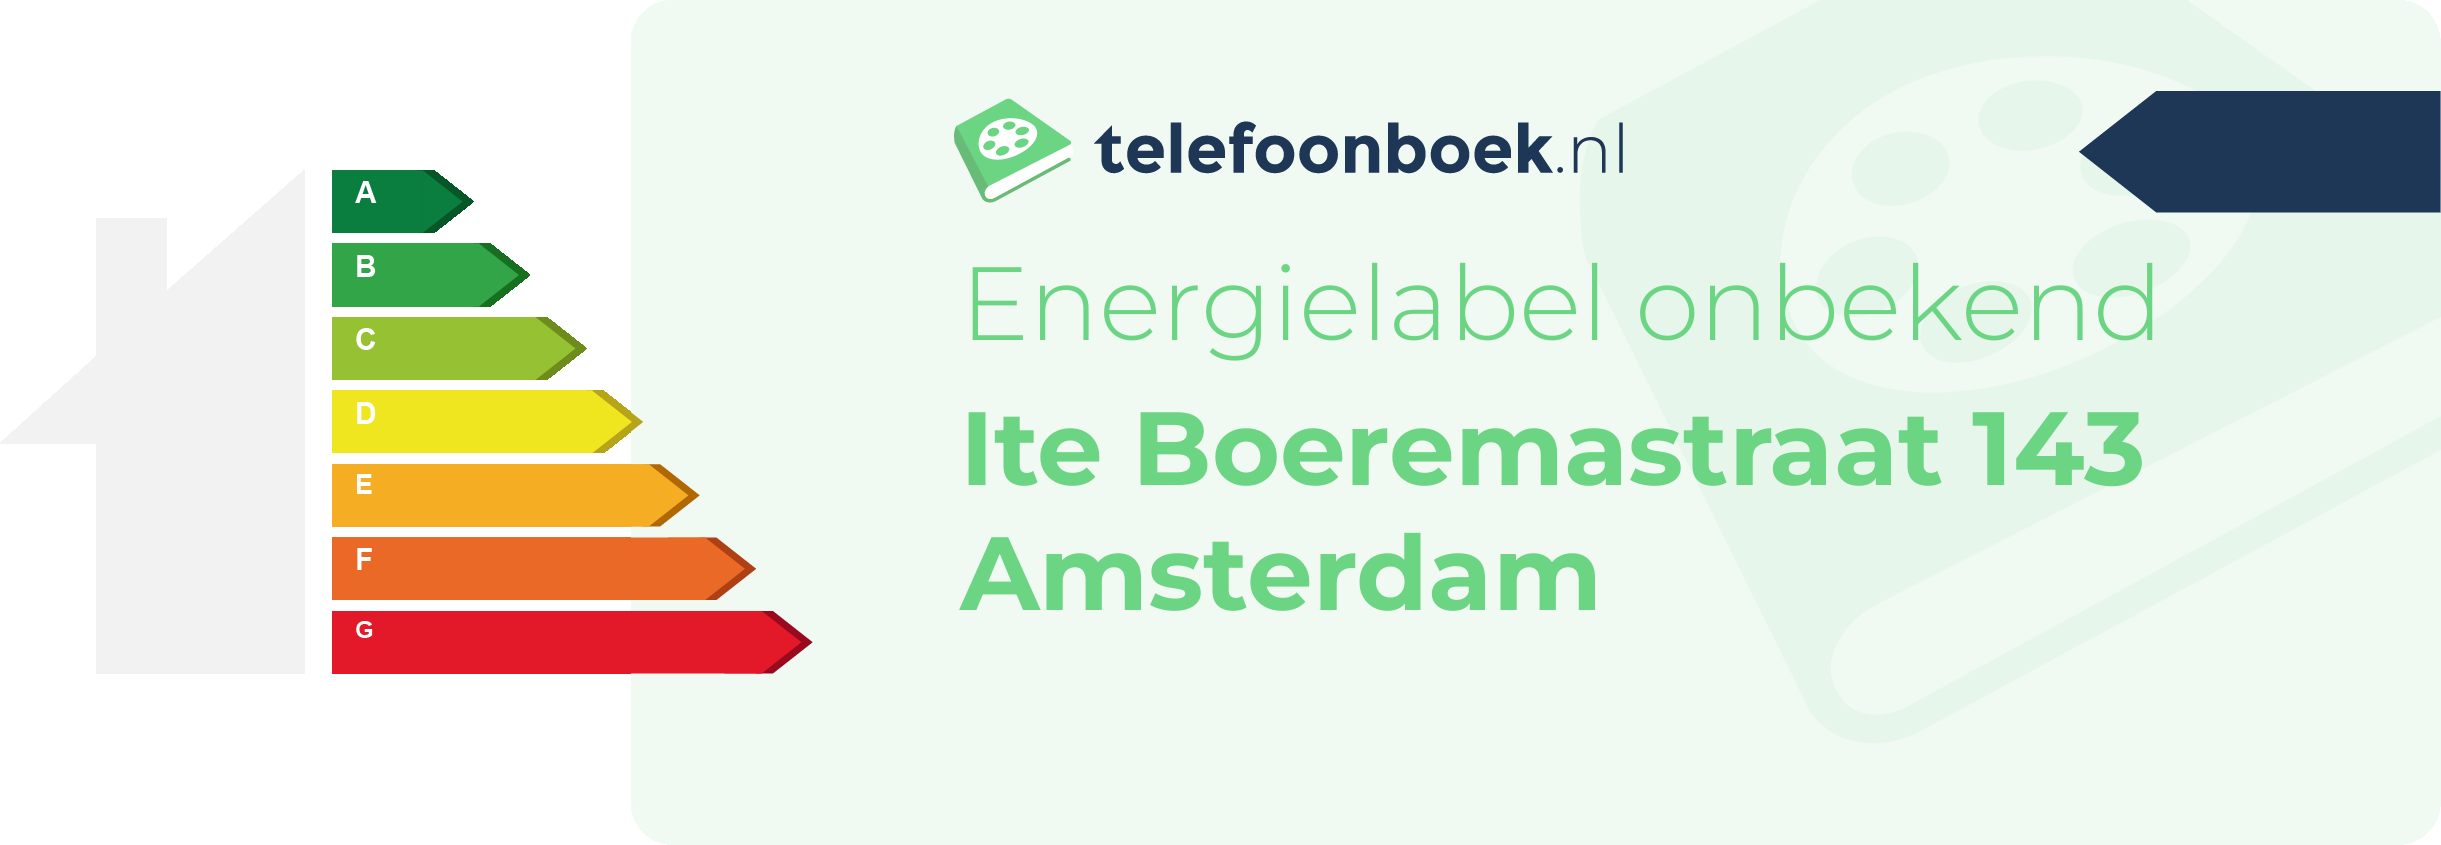 Energielabel Ite Boeremastraat 143 Amsterdam